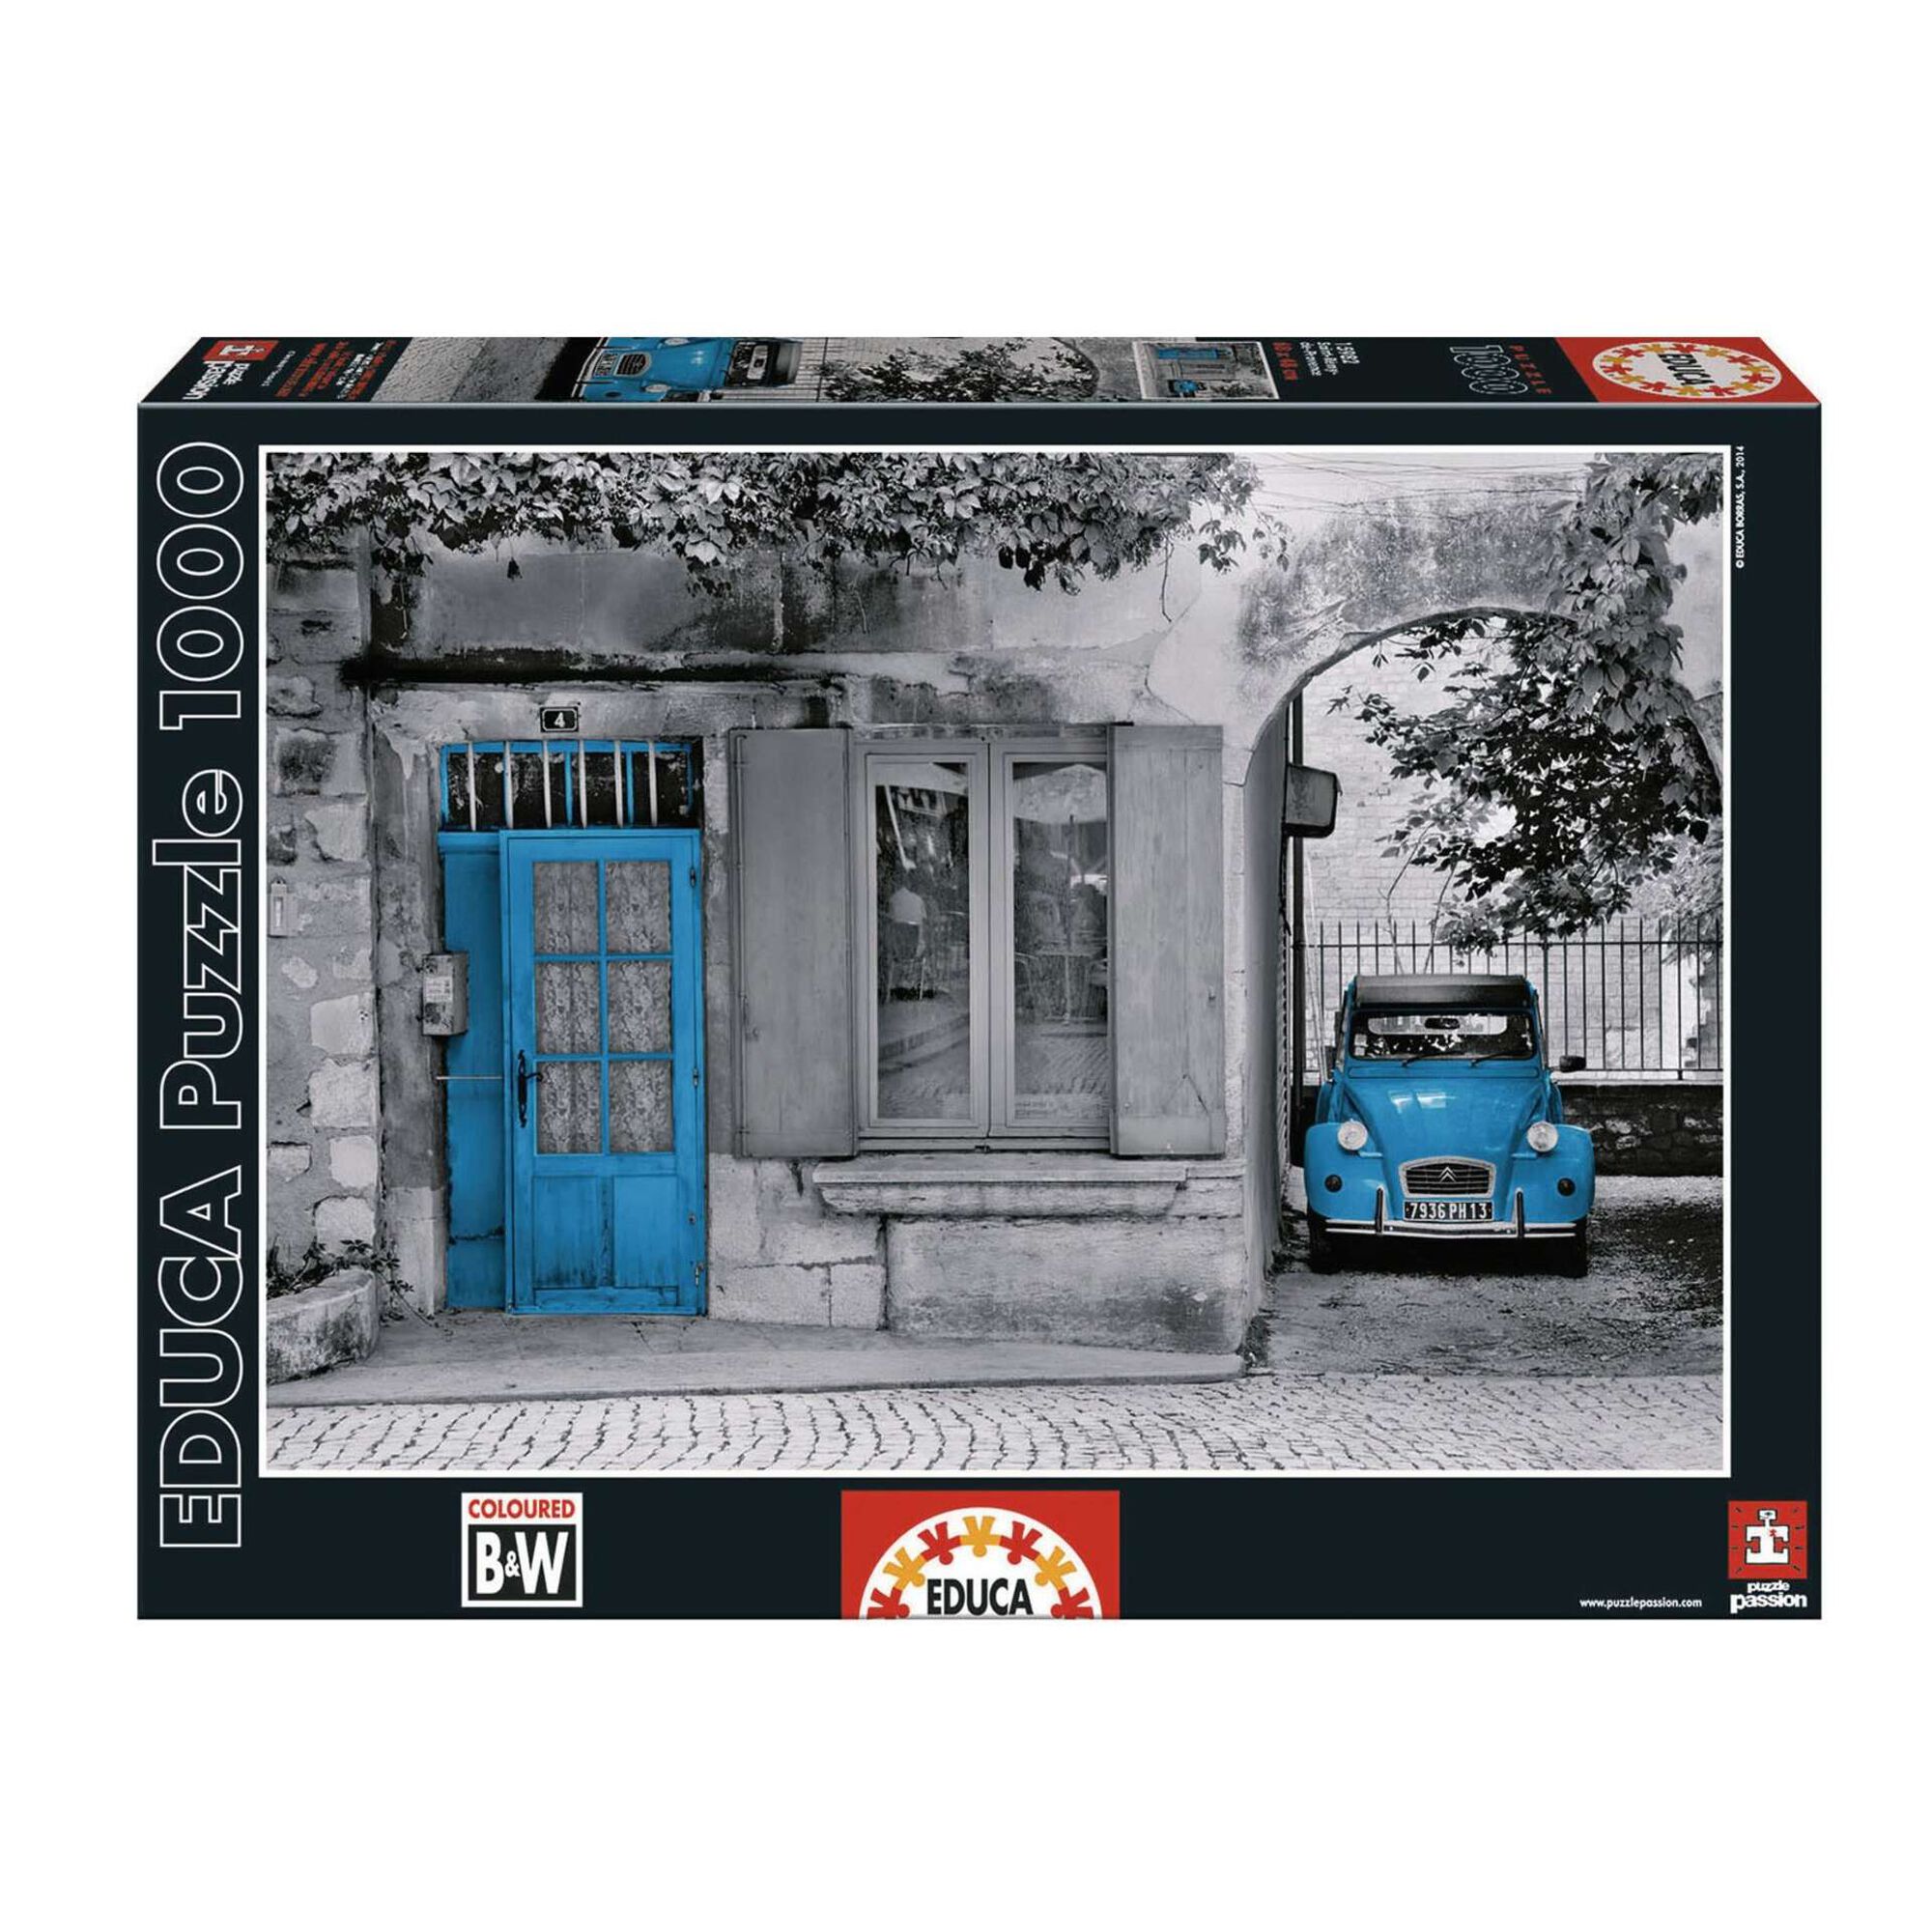 Educa Borrás - Paris - Puzzle 1000 peças, PUZZLE 1000+ pçs